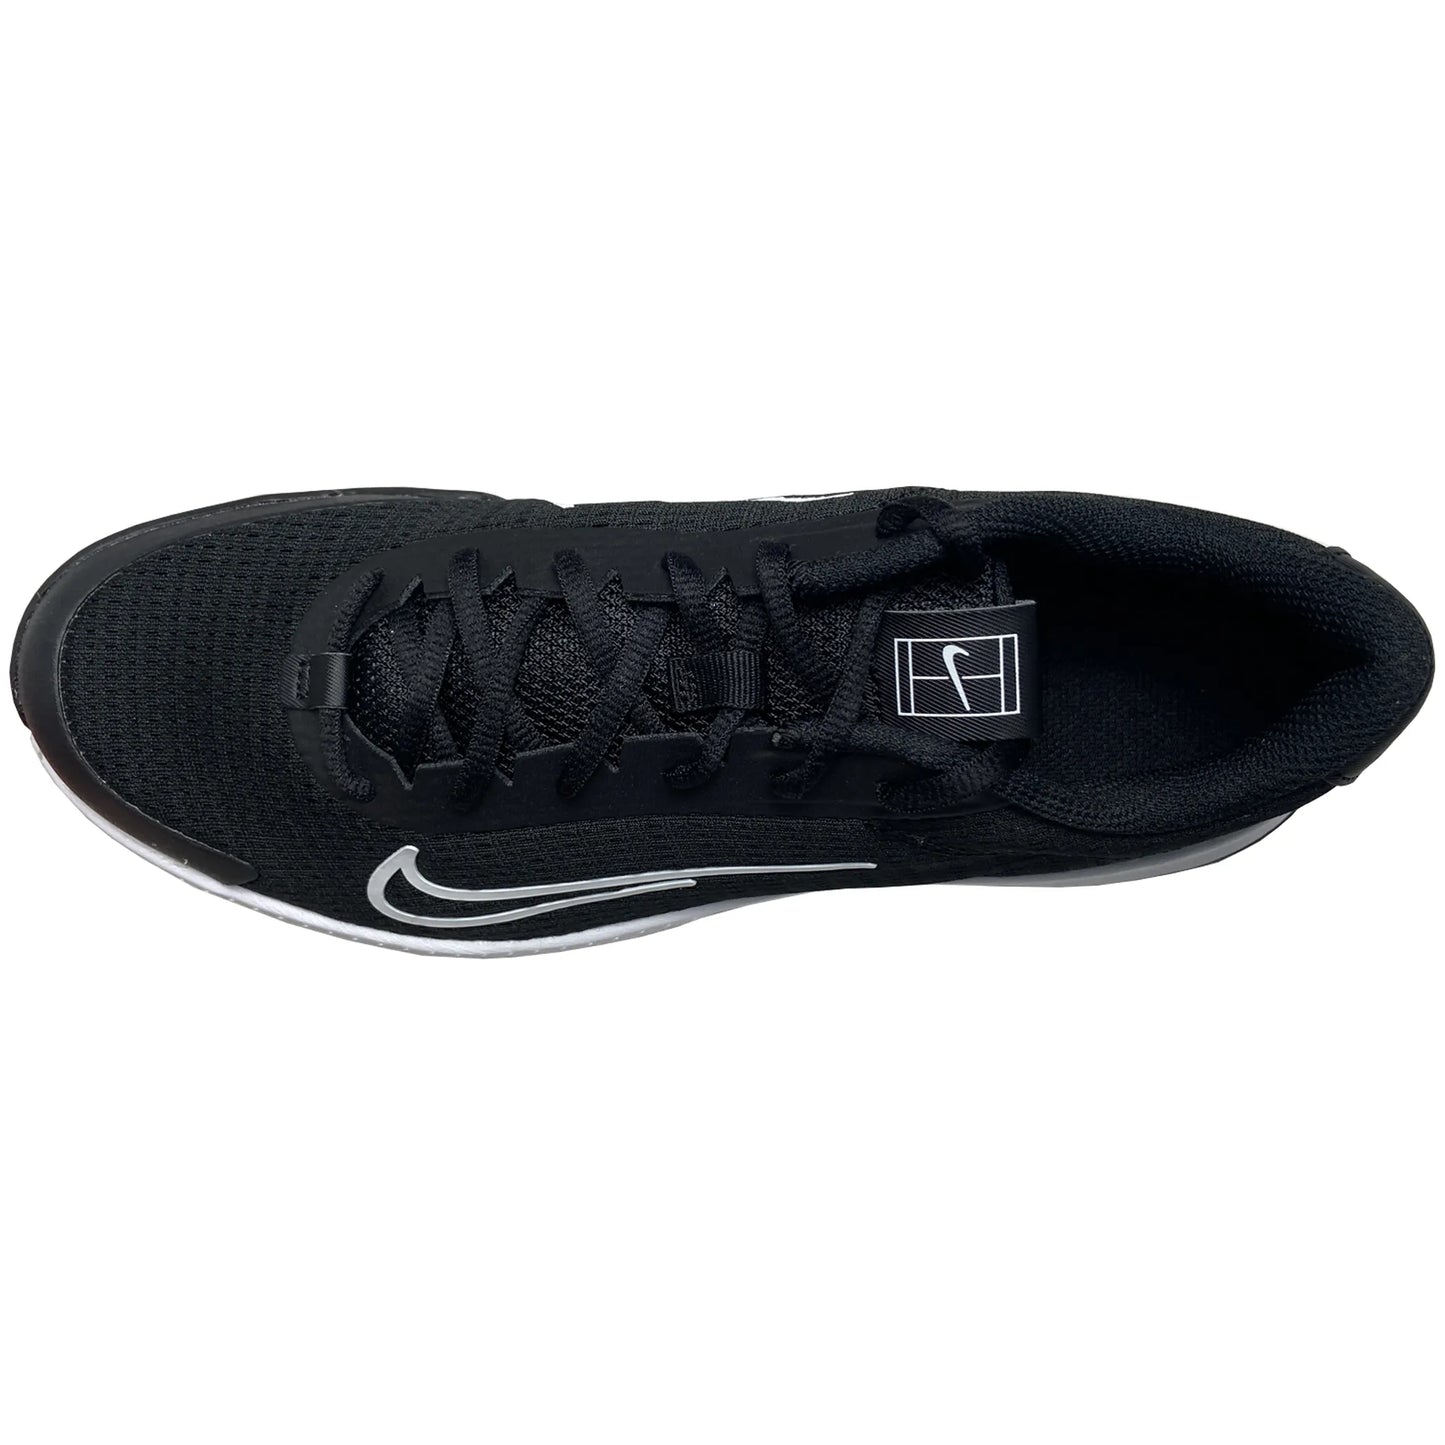 Nike Homme Vapor Lite 2 DV2018-001